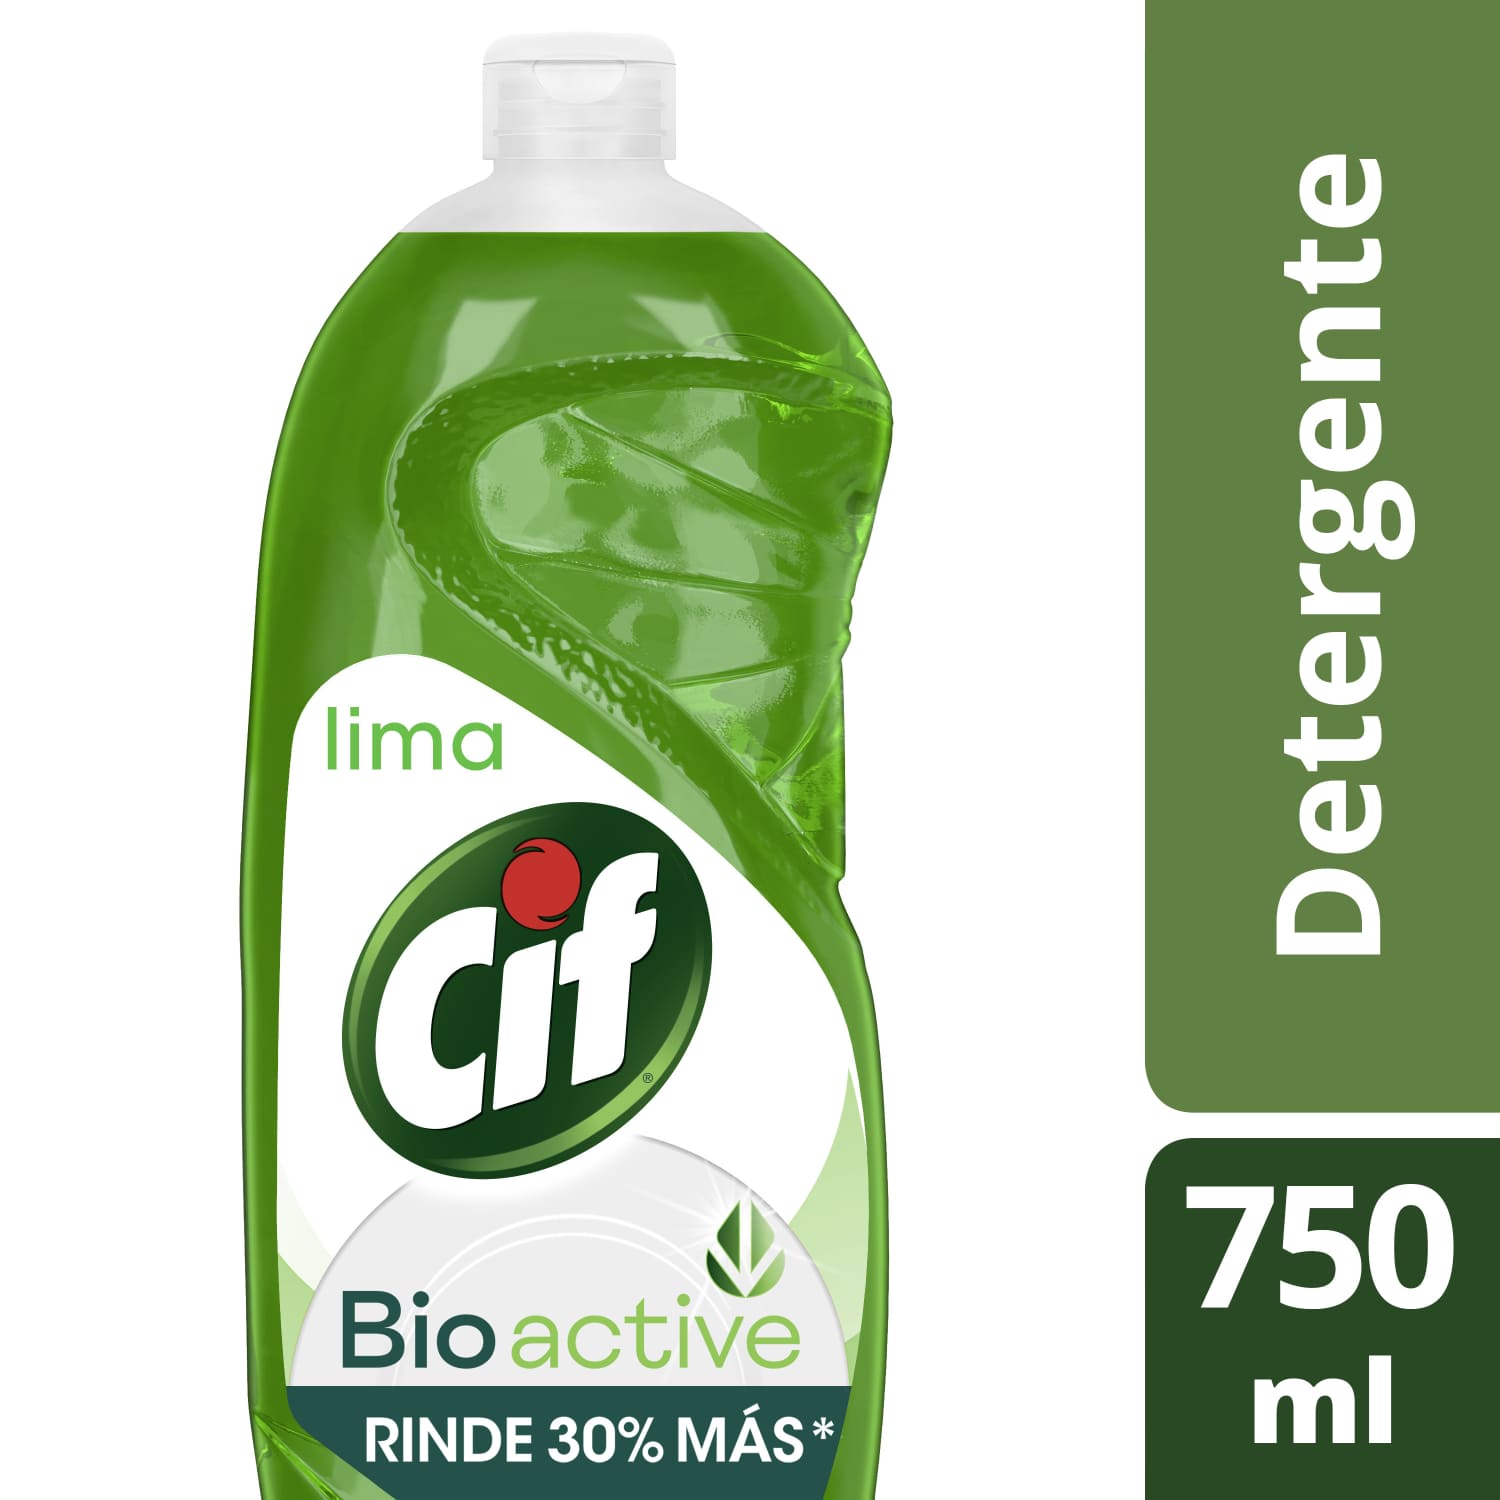 Cif Lima Bio Active Detergente x 750ml